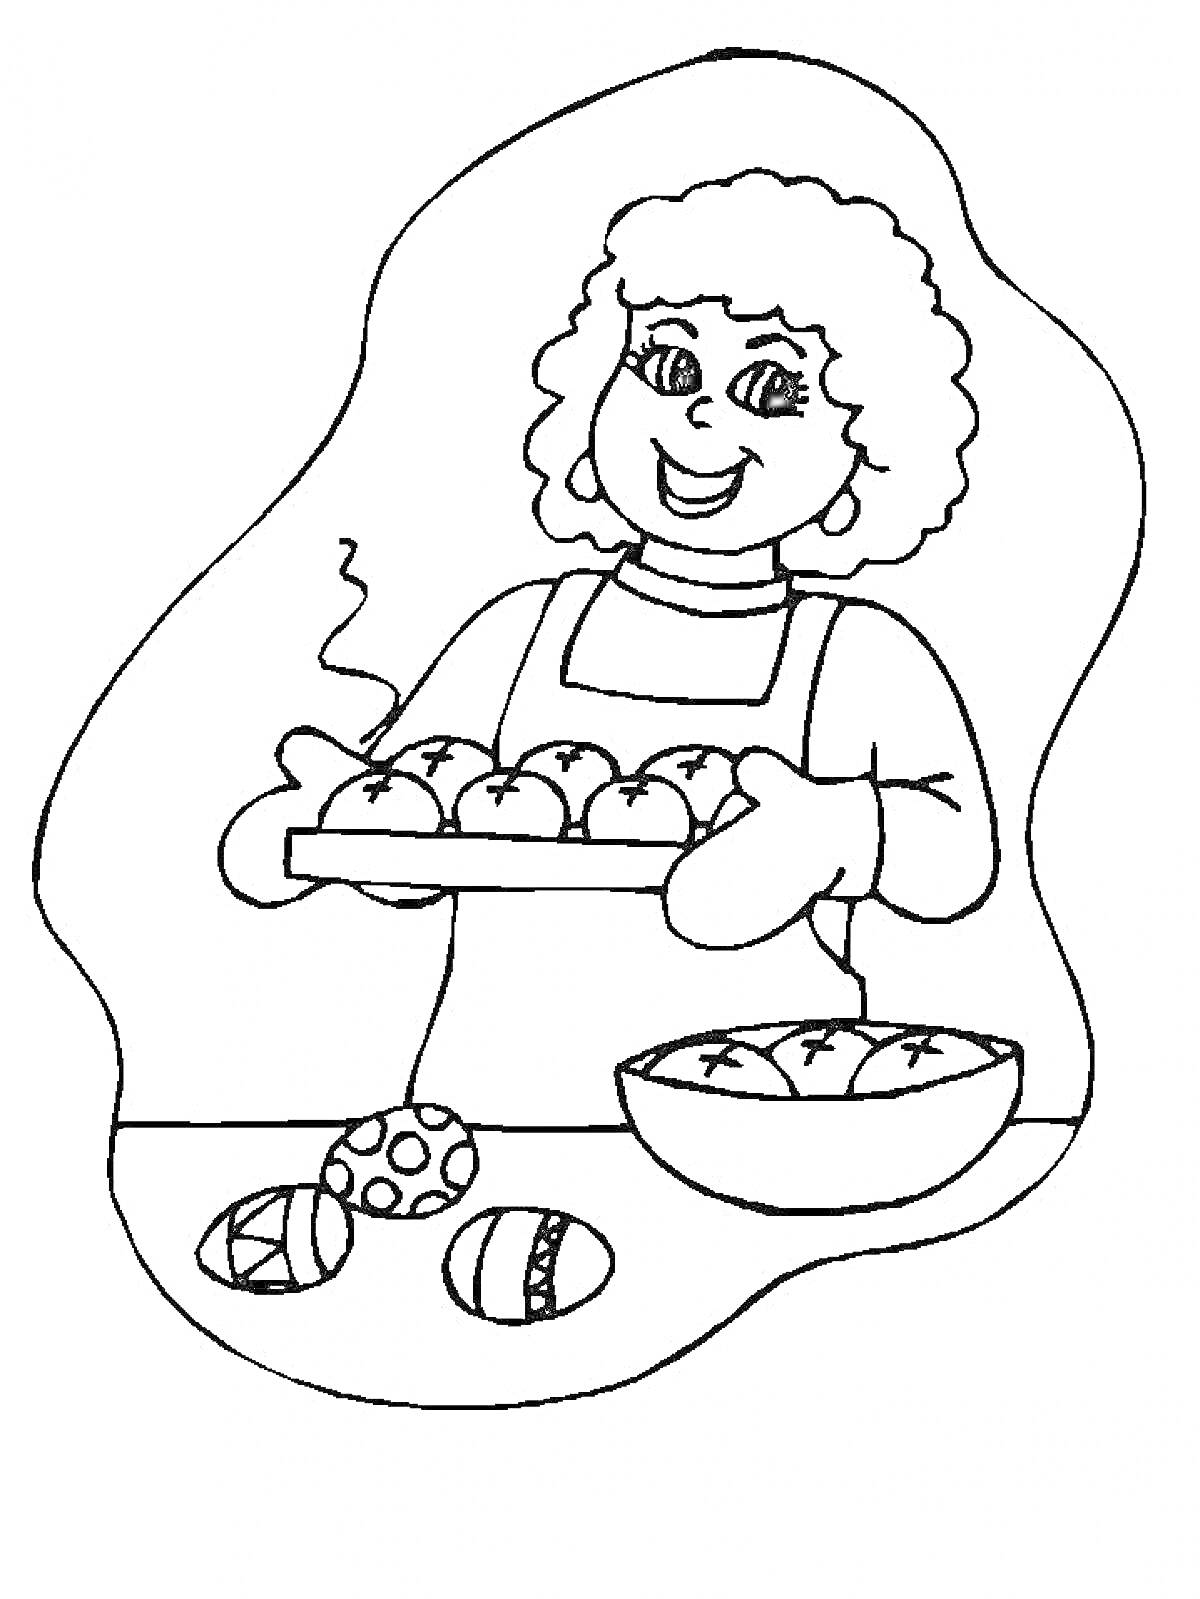 Раскраска Женщина с пирожками, миска, расписные яйца на столе